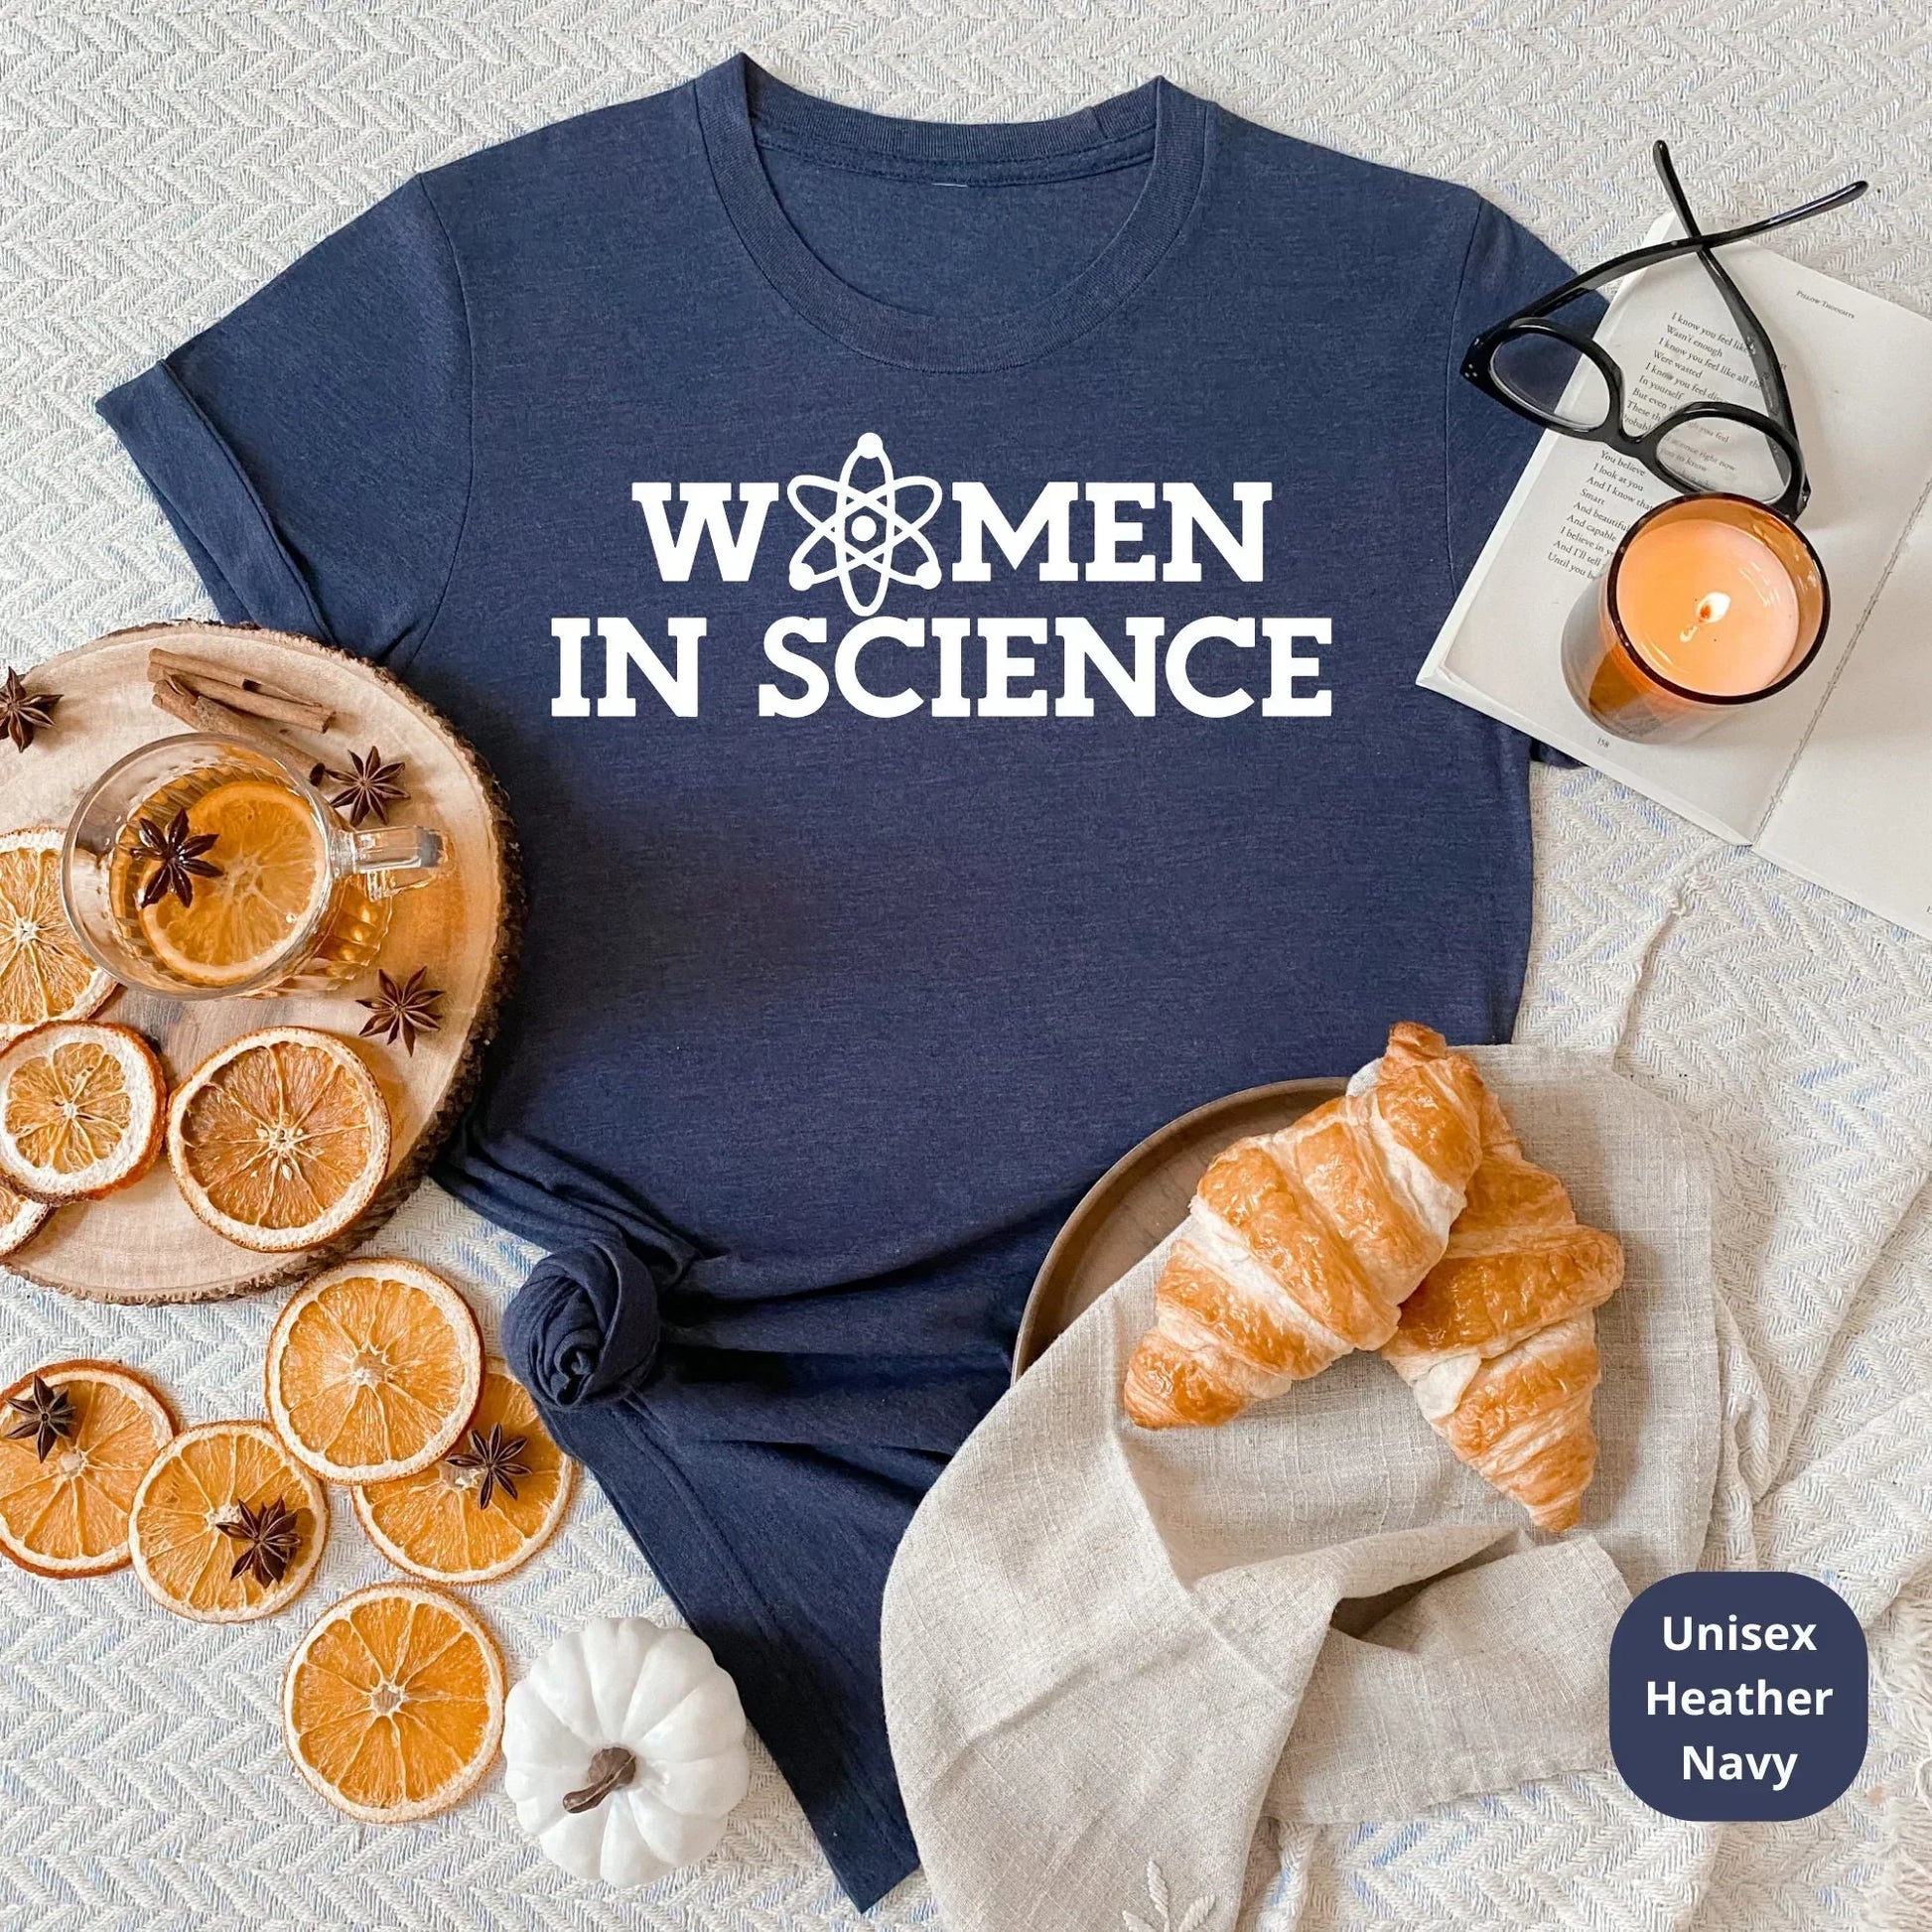 Science Teacher Shirt, Women In Science, Teacher Sweatshirt, Gift for Teacher Elements Teacher Shirt, Funny Chemistry Teacher Shirt HMDesignStudioUS